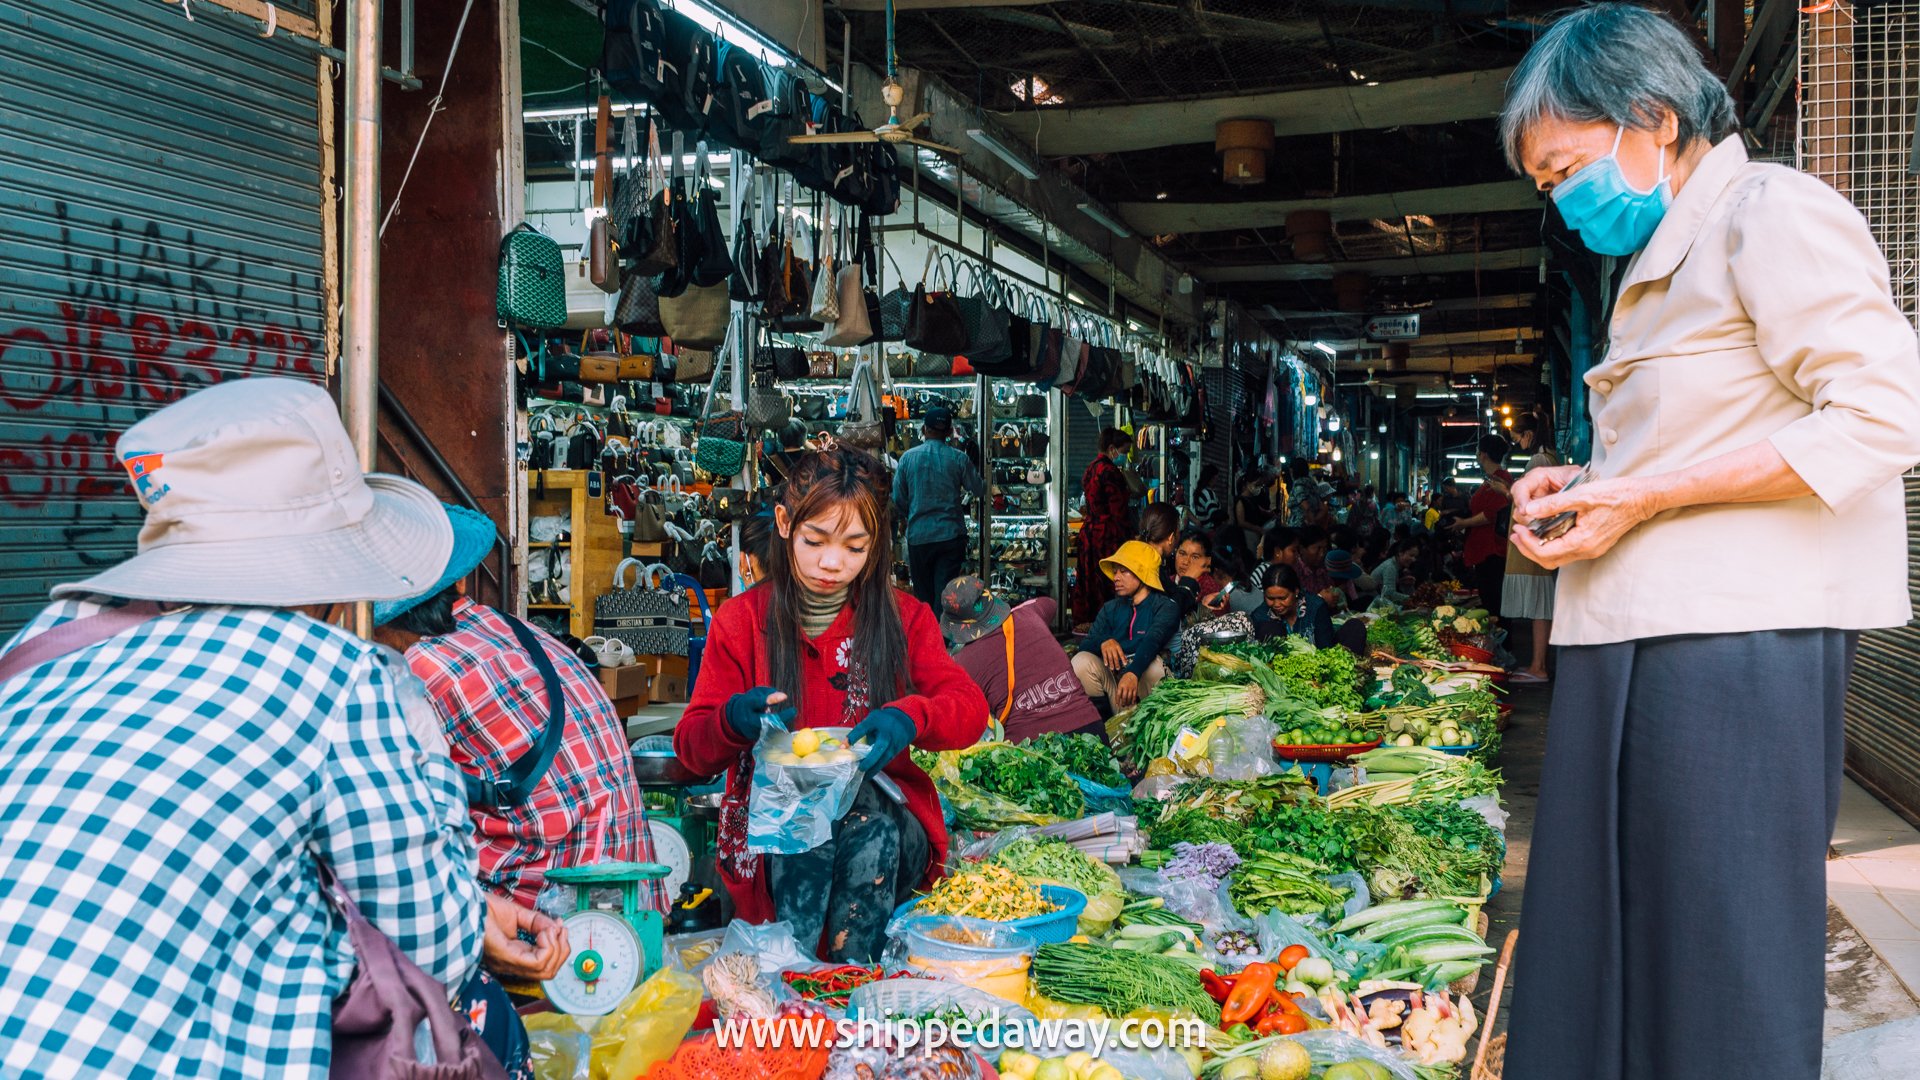 Busy Old Market in Siem Reap